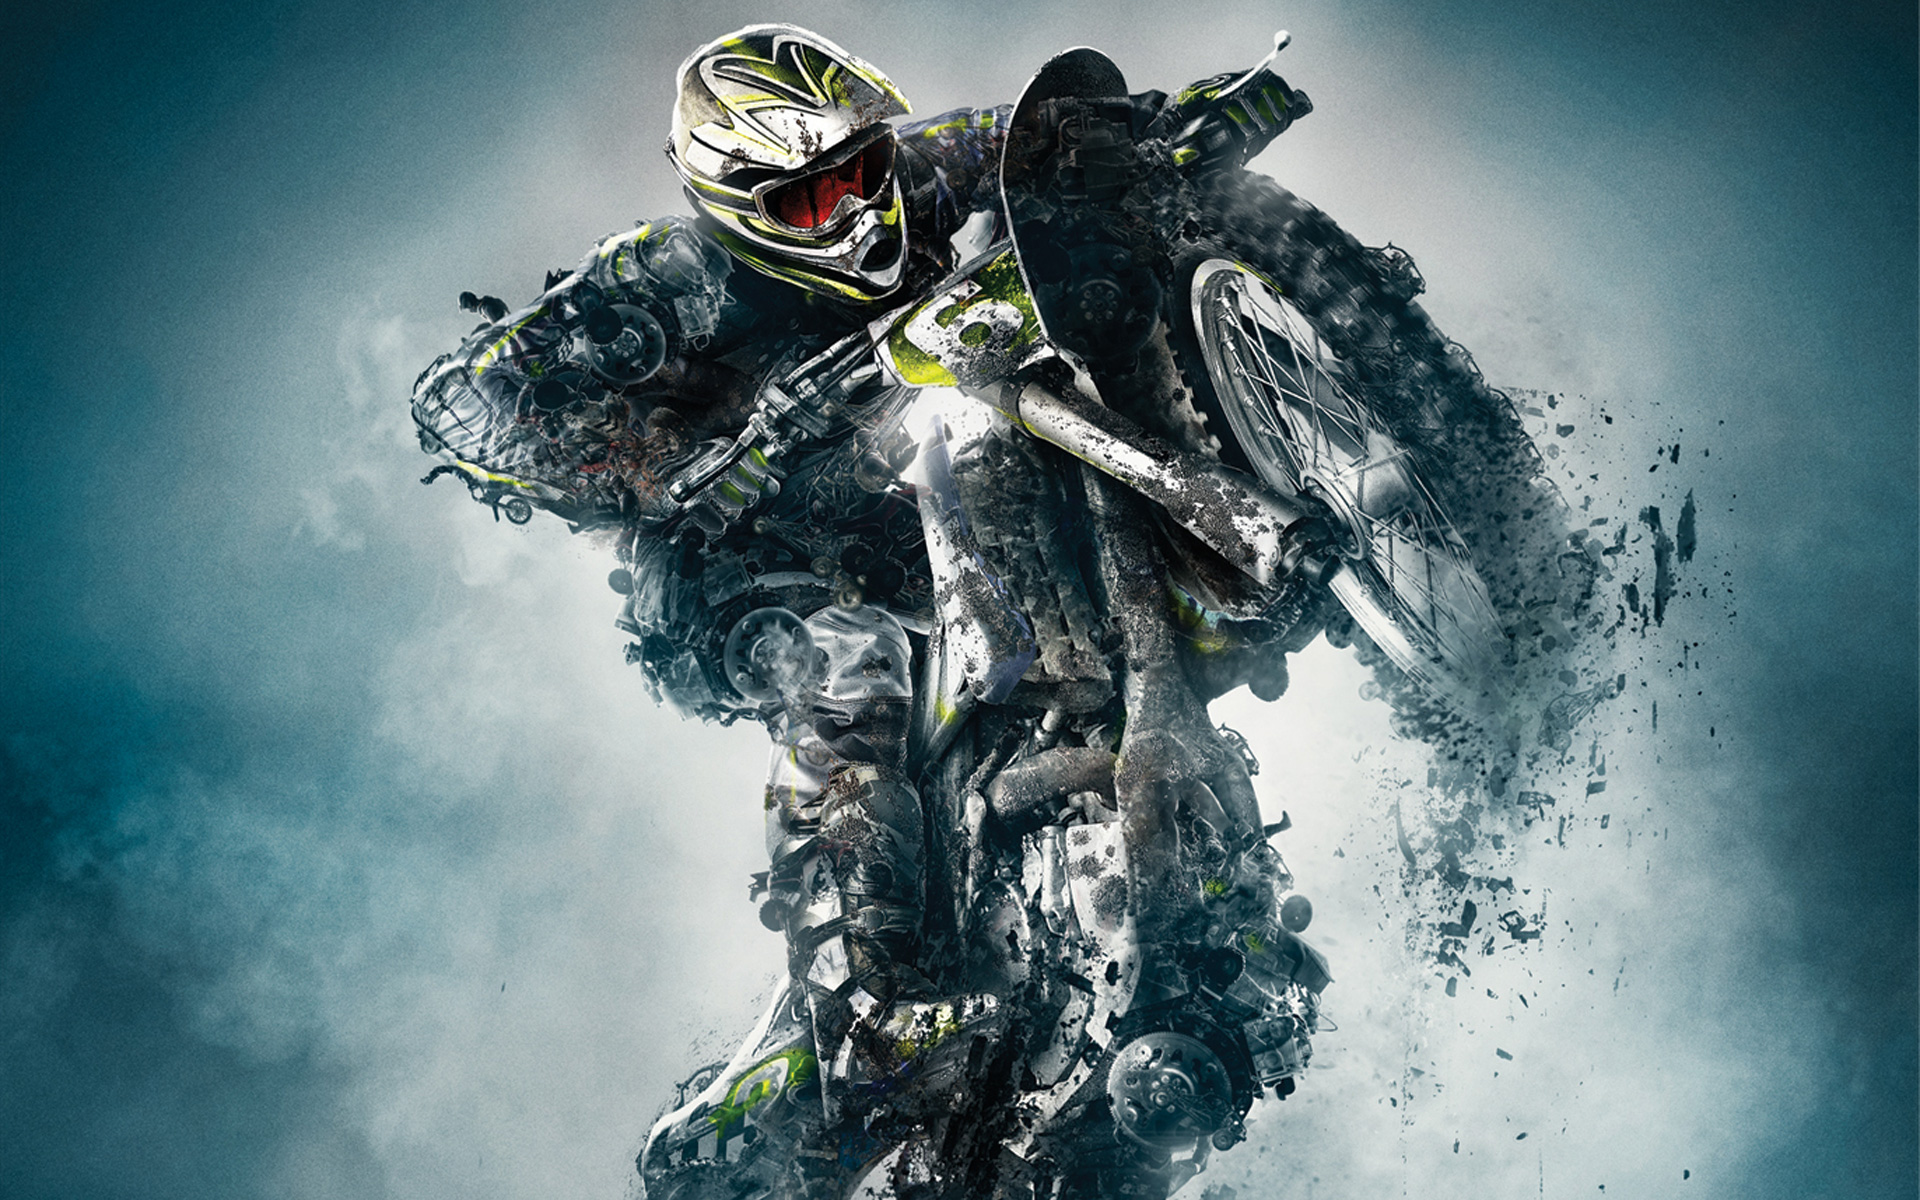 Motocross Wallpaper Widescreen Images - fullwidehd.com